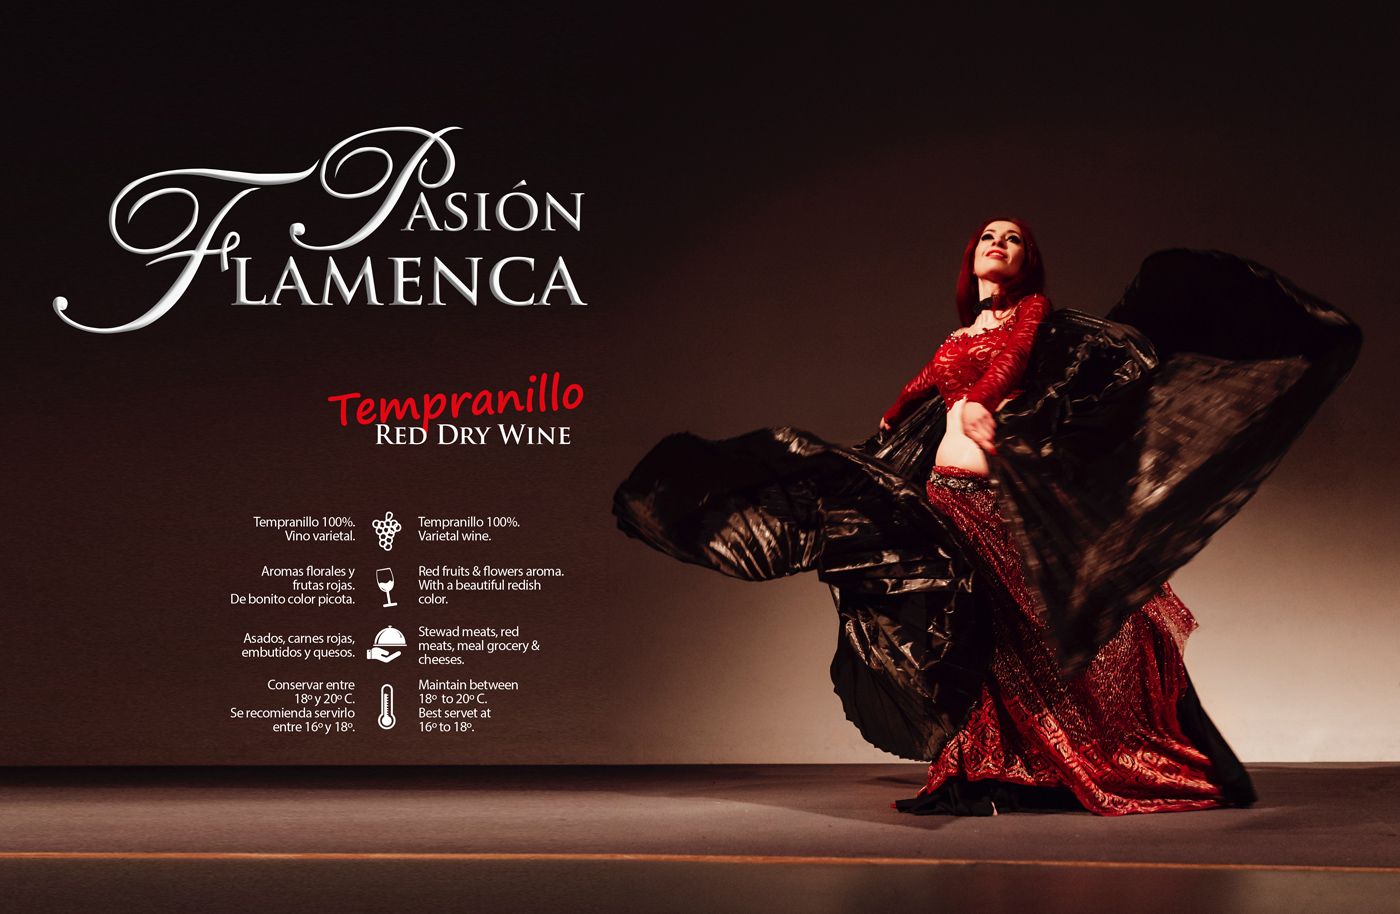 Diseño gráfico y creativo de etiquetas y packaging de vino para PASIÓN FLAMENCA